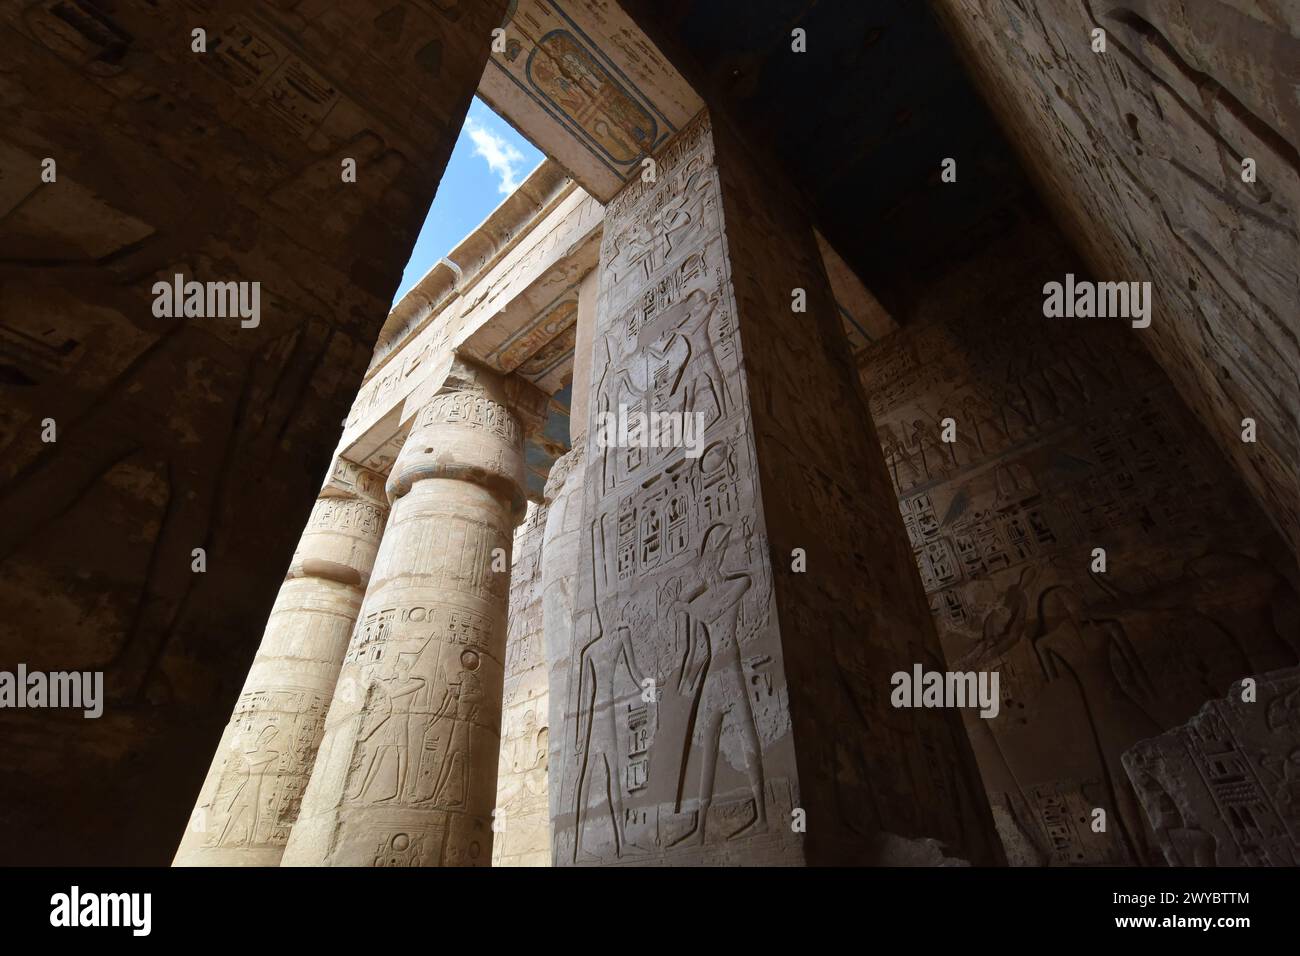 L'antica storia egizia. Il complesso del Tempio di Karnak, comunemente noto come Karnak, comprende un vasto mix di templi, piloni, cappelle e altri edifici Foto Stock